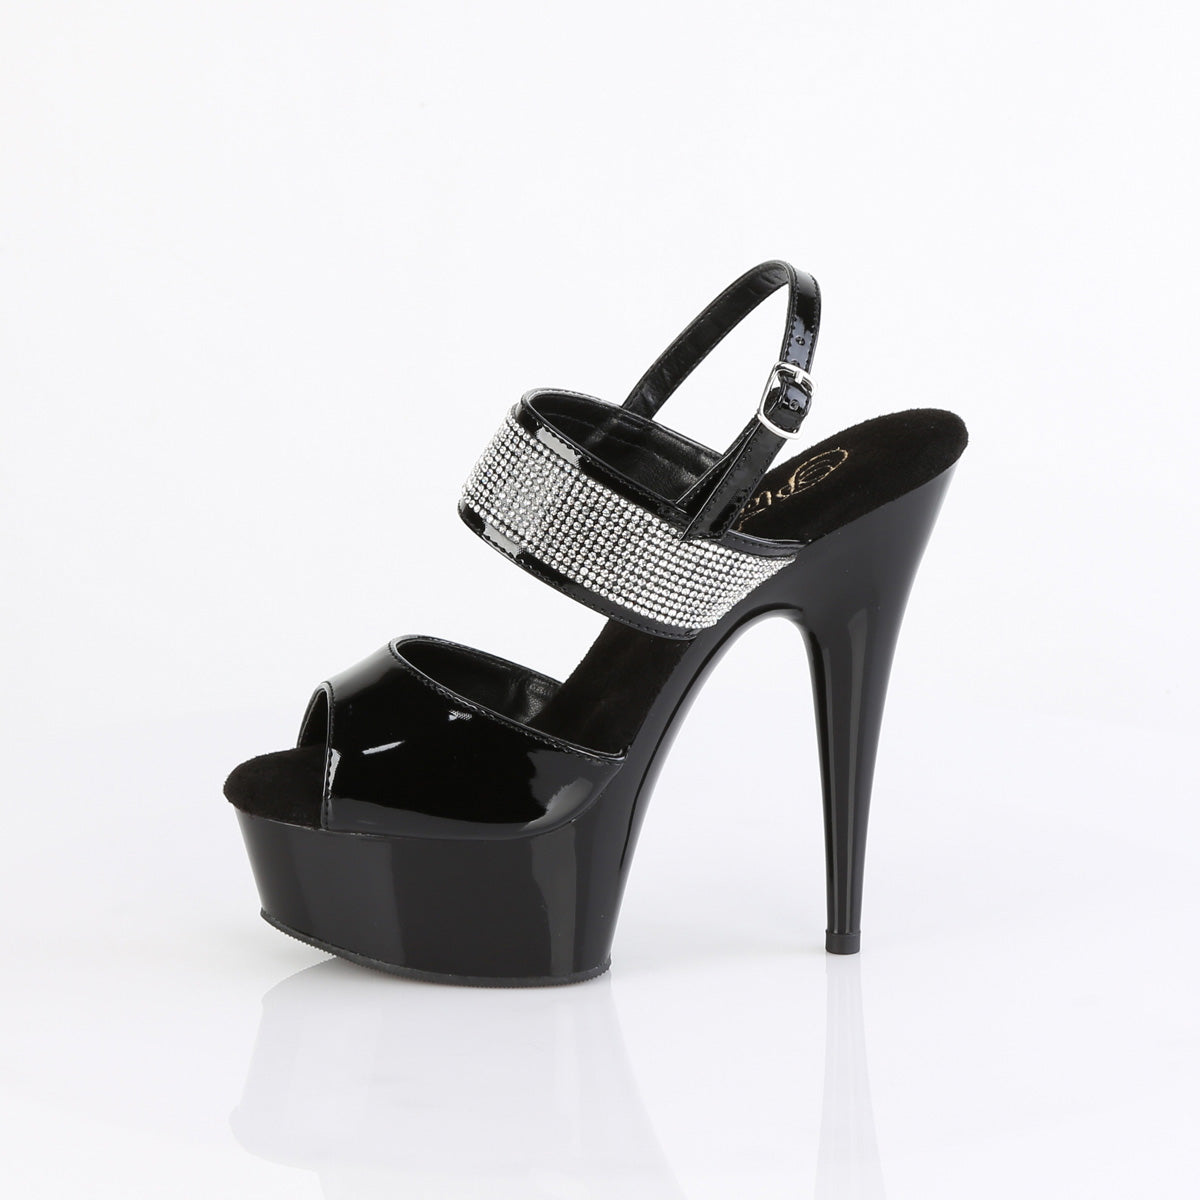 DELIGHT-639 Pleaser Black Patent Platform Shoes [Exotic Dance Shoes]